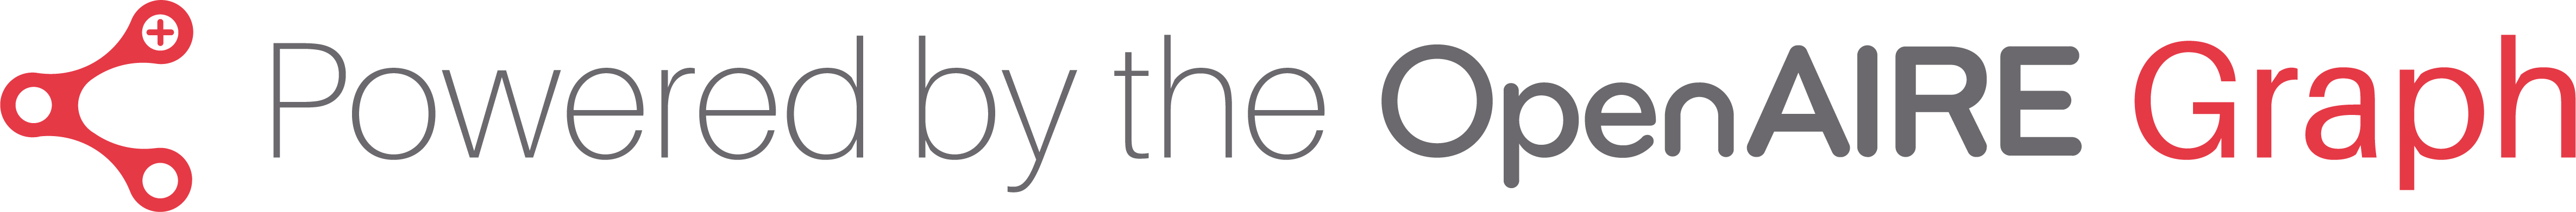 Openaire logo